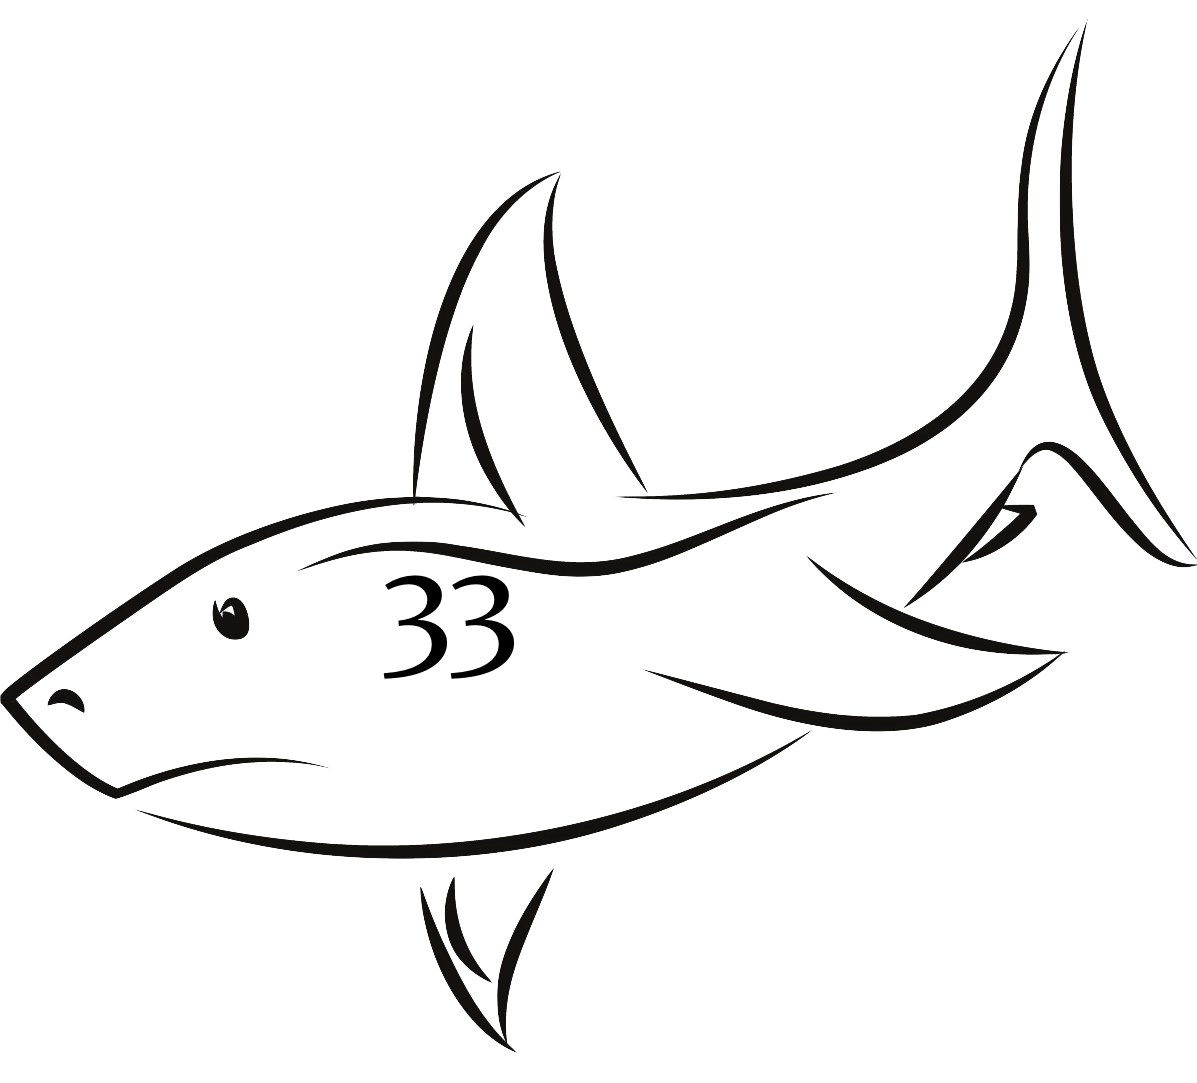 Sharkadina: Introducing #33, Roger "The Shark" Bernadina